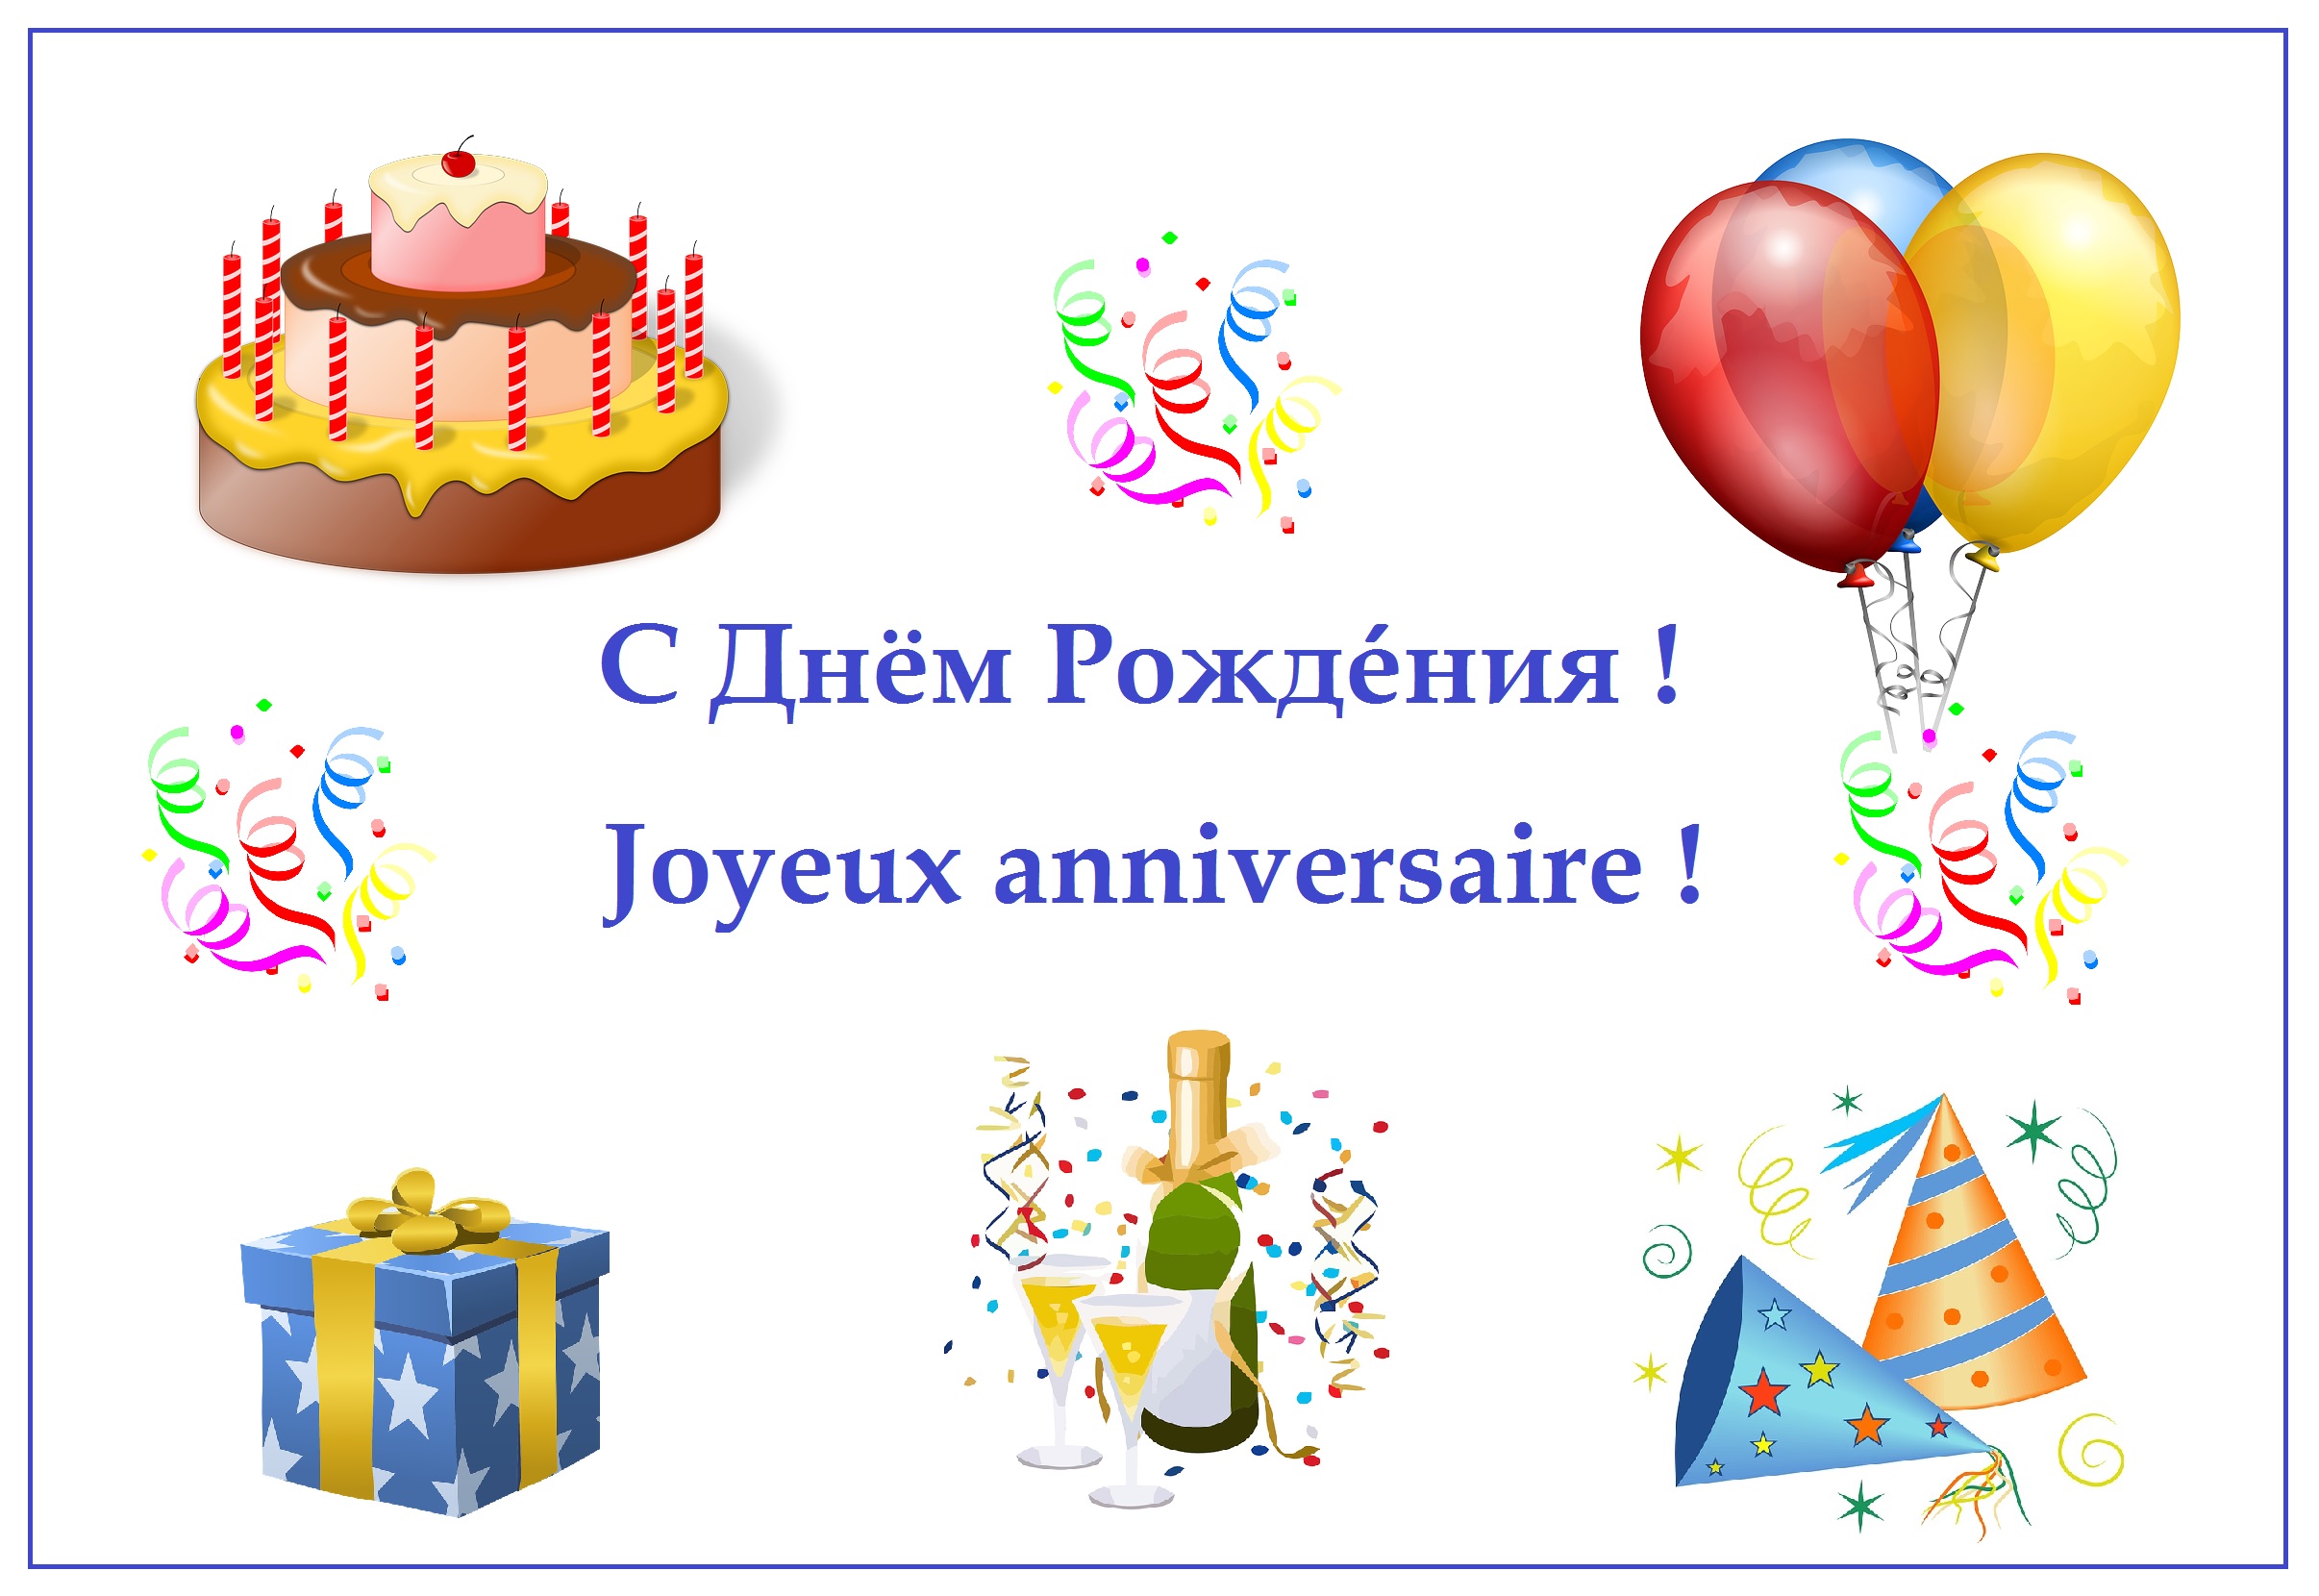 joyeux anniversaire russe chanson S Dnyom Rozhdeniya Joyeux Anniversaire Le Russe Pour Tous joyeux anniversaire russe chanson